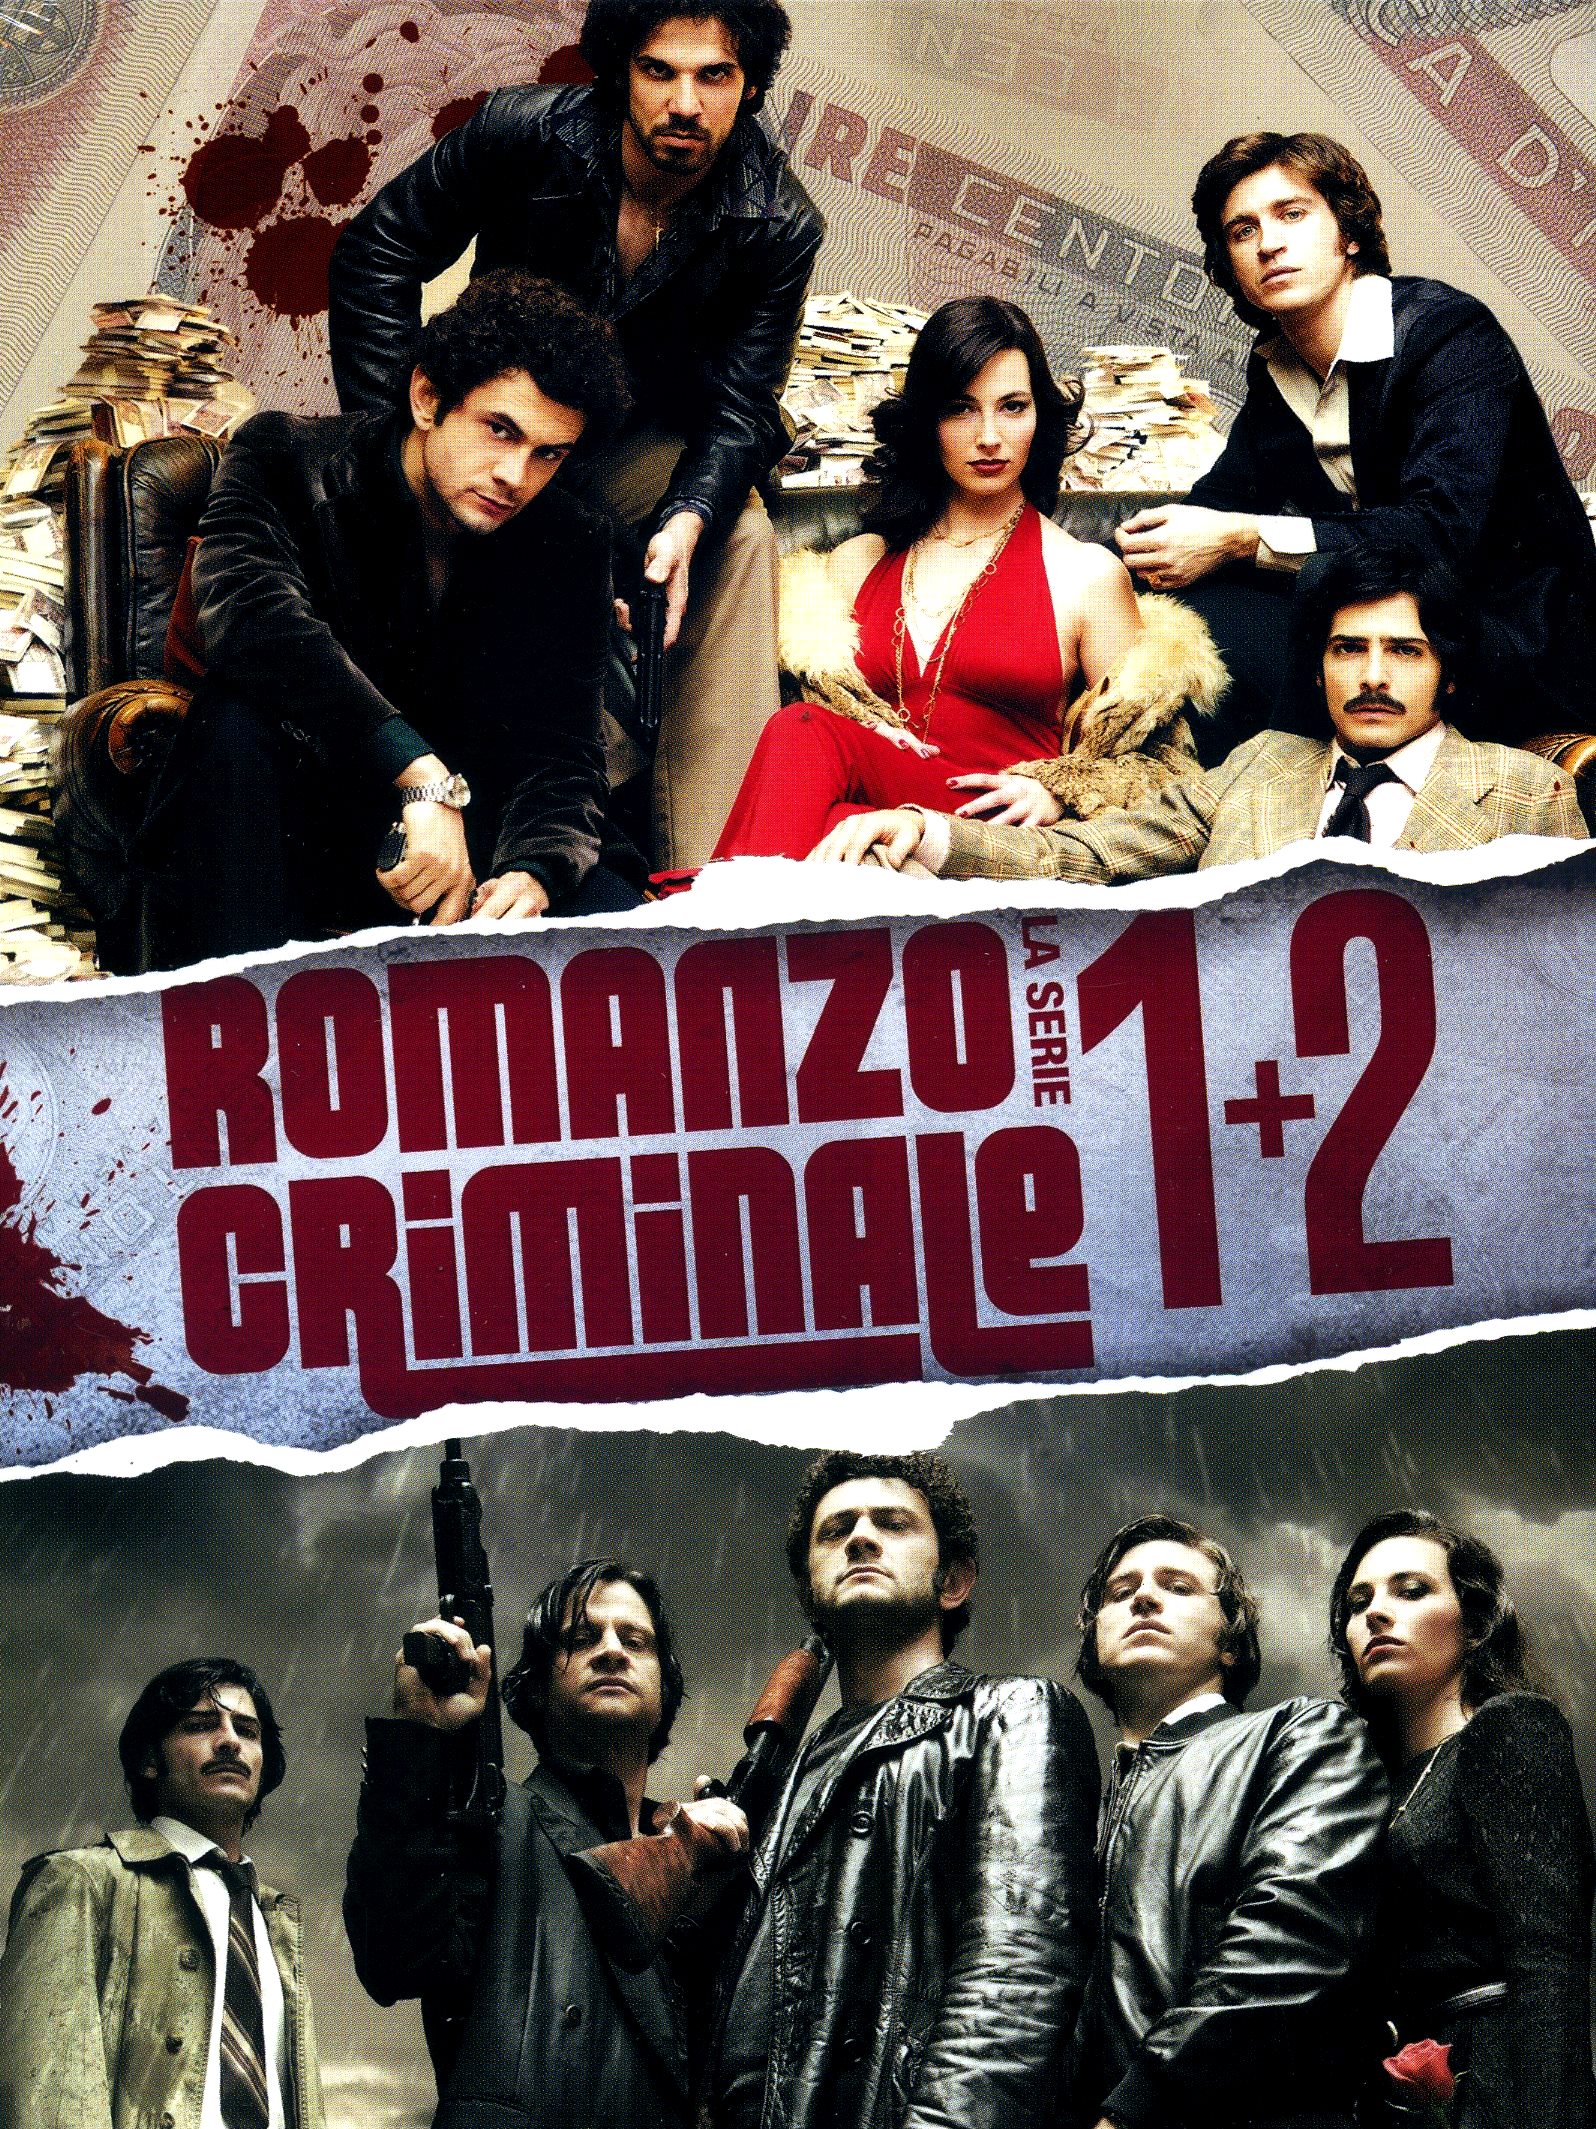 Romanzo criminale – La serie